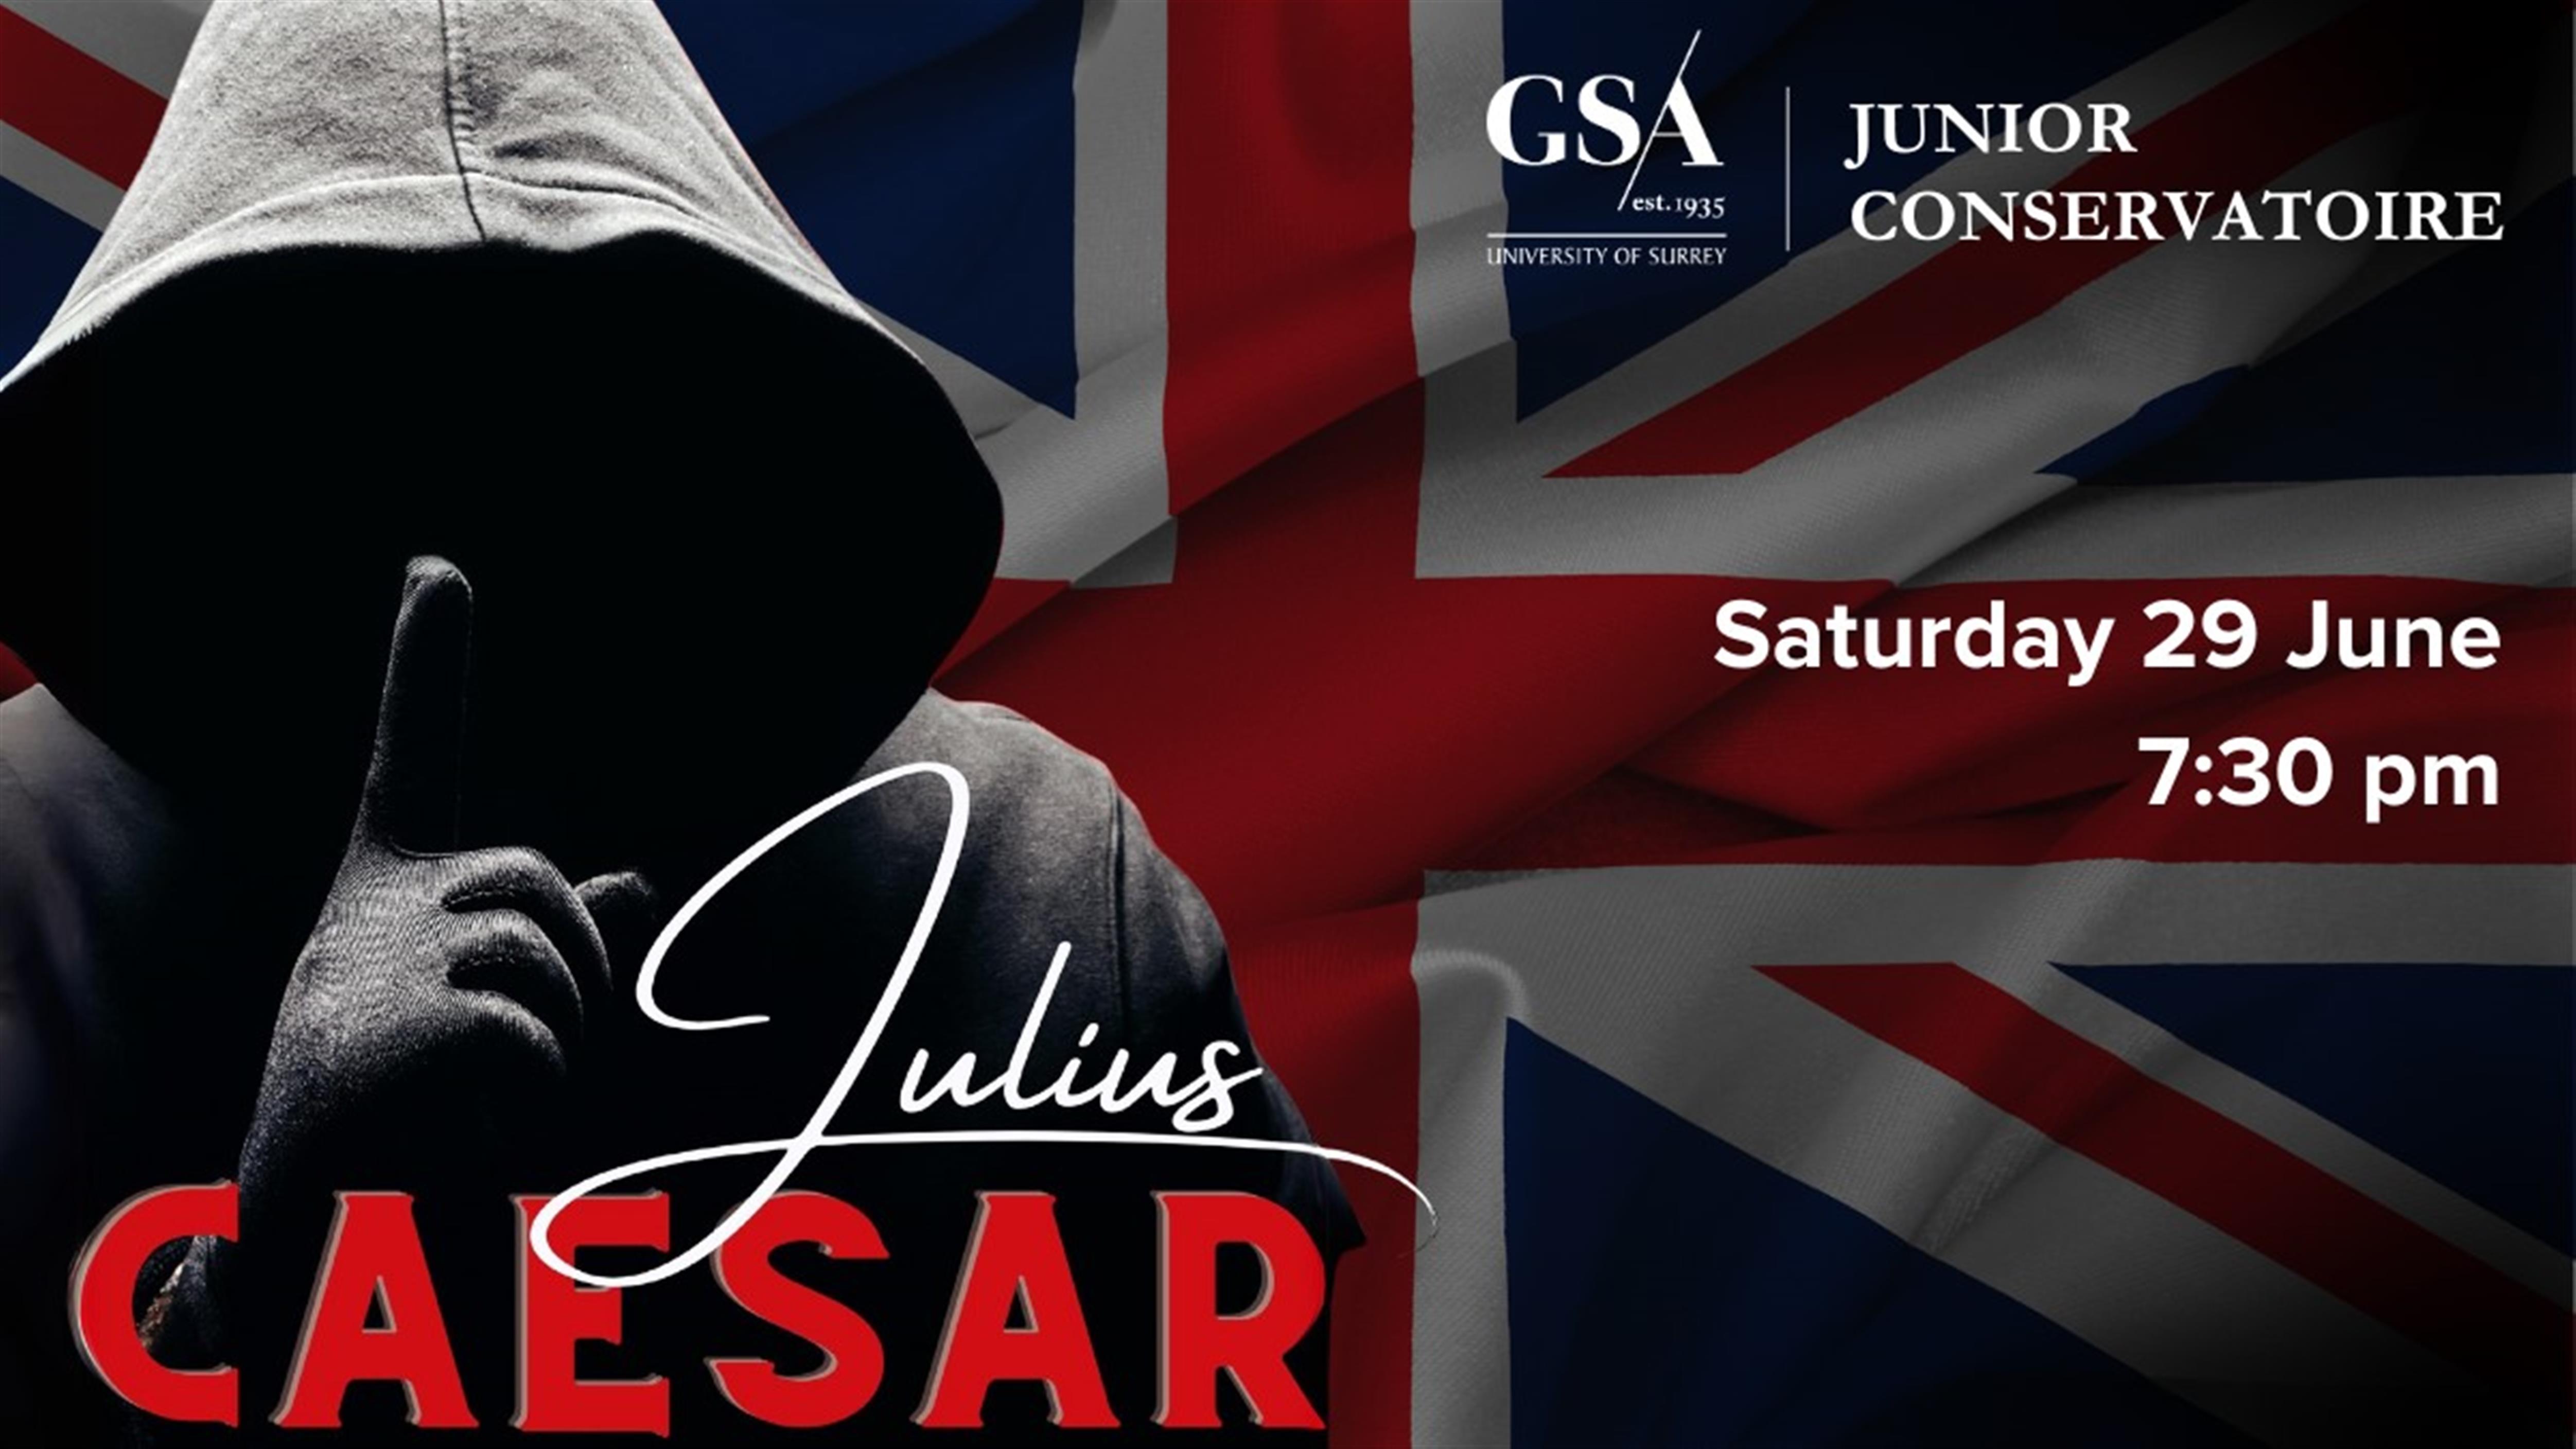 GSA Junior Conservatoire presents Julius Caesar